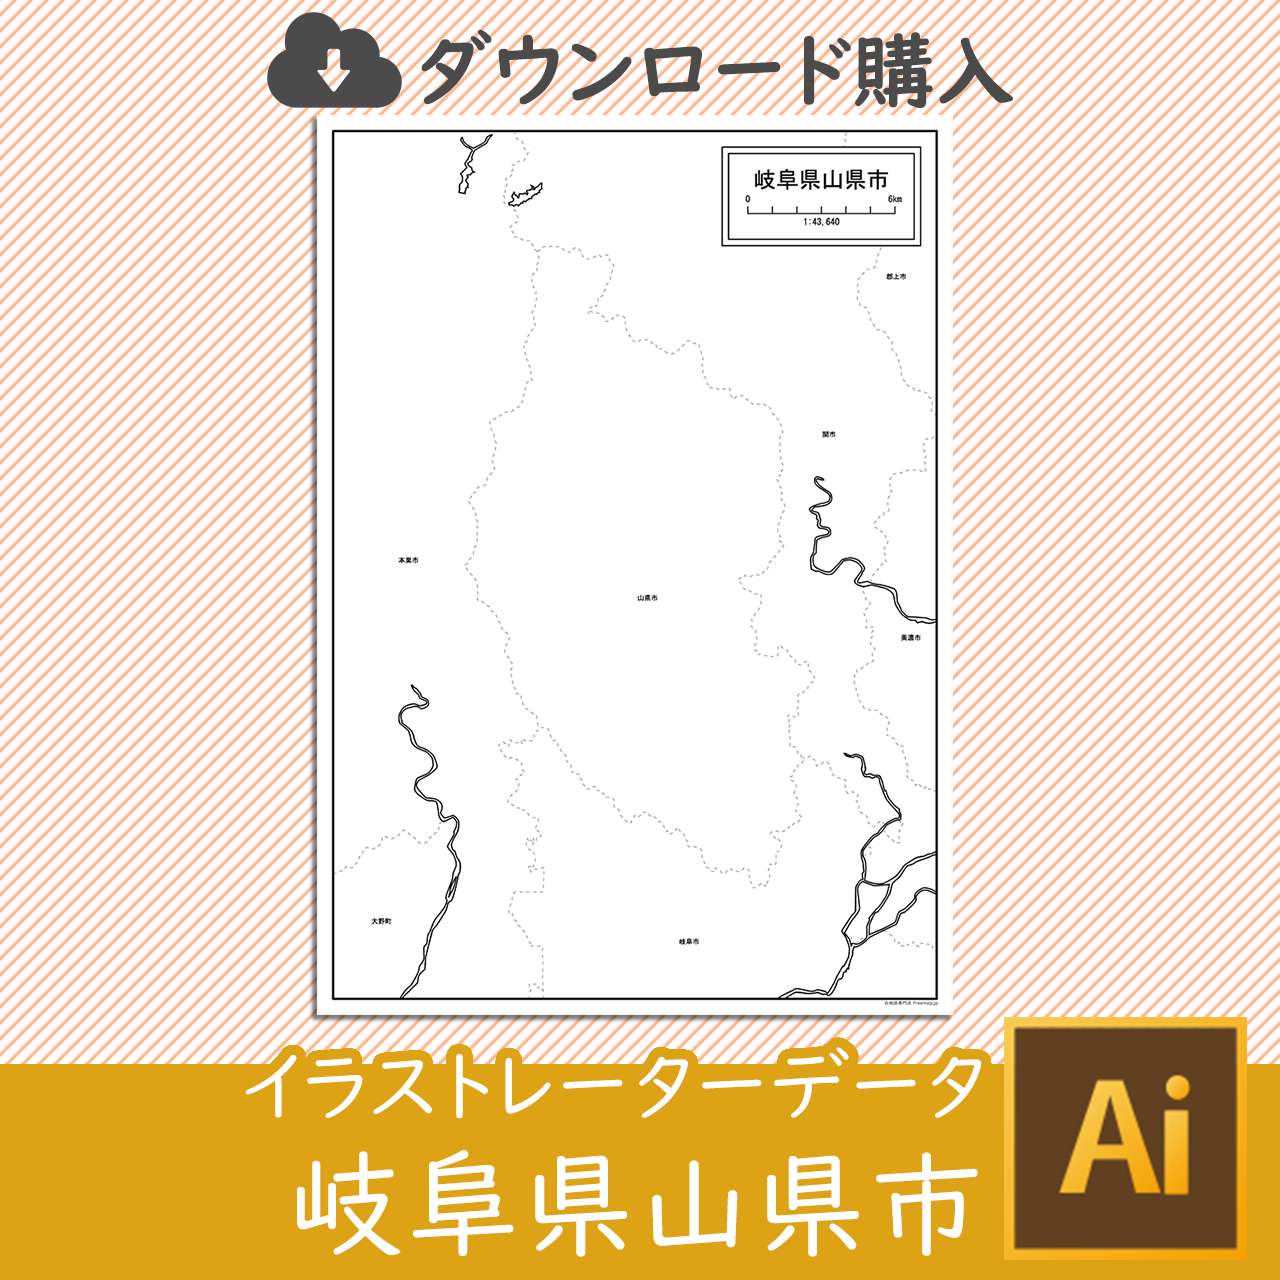 山県市のaiデータのサムネイル画像